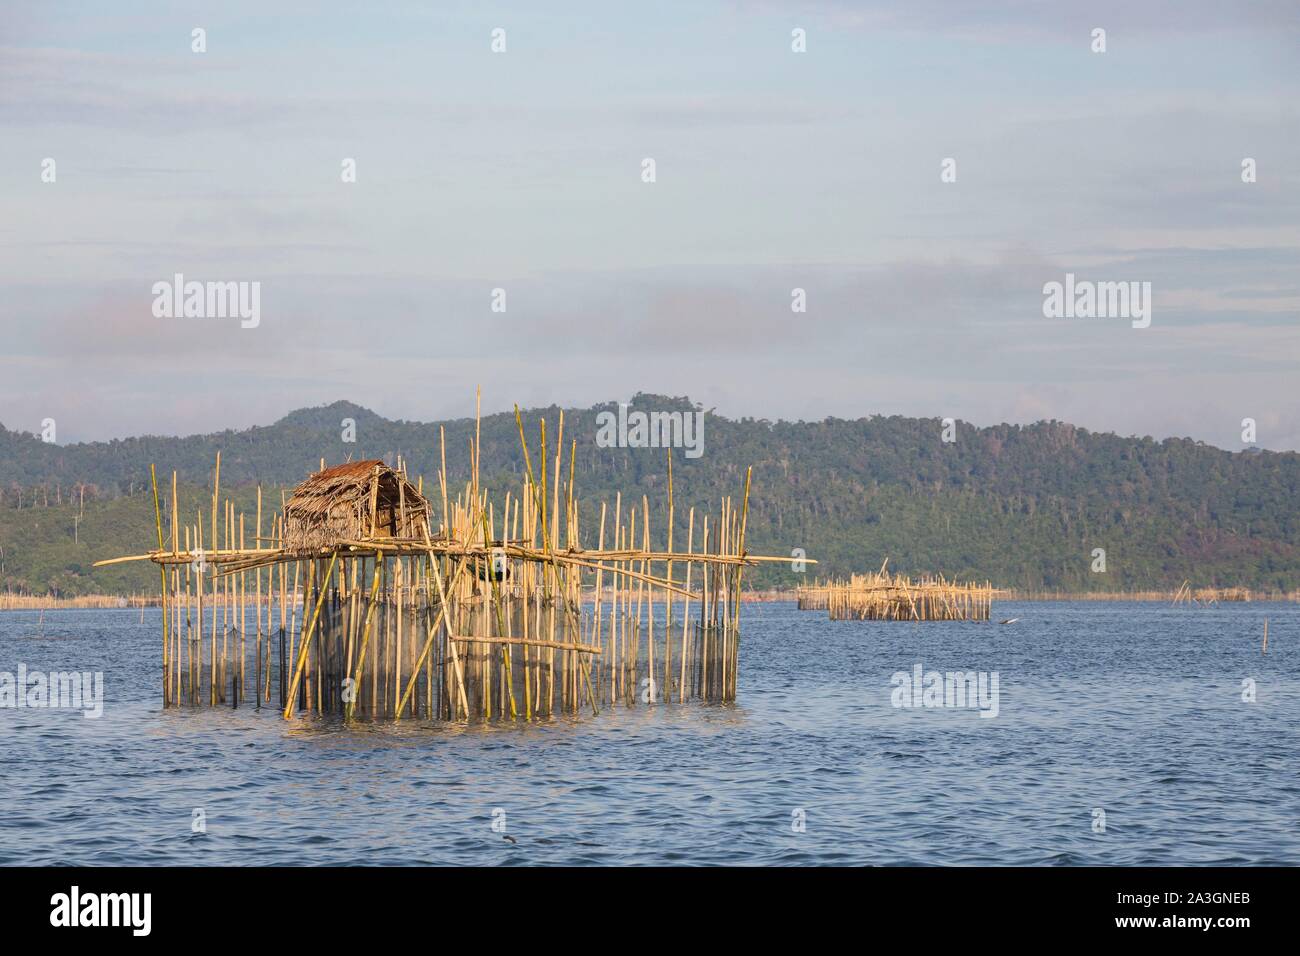 Philippines, Palawan, Malampaya Sound paysages terrestres et marins protégés, les engins de pêche typique avec une structure en bambou le maintien des filets de poisson Banque D'Images